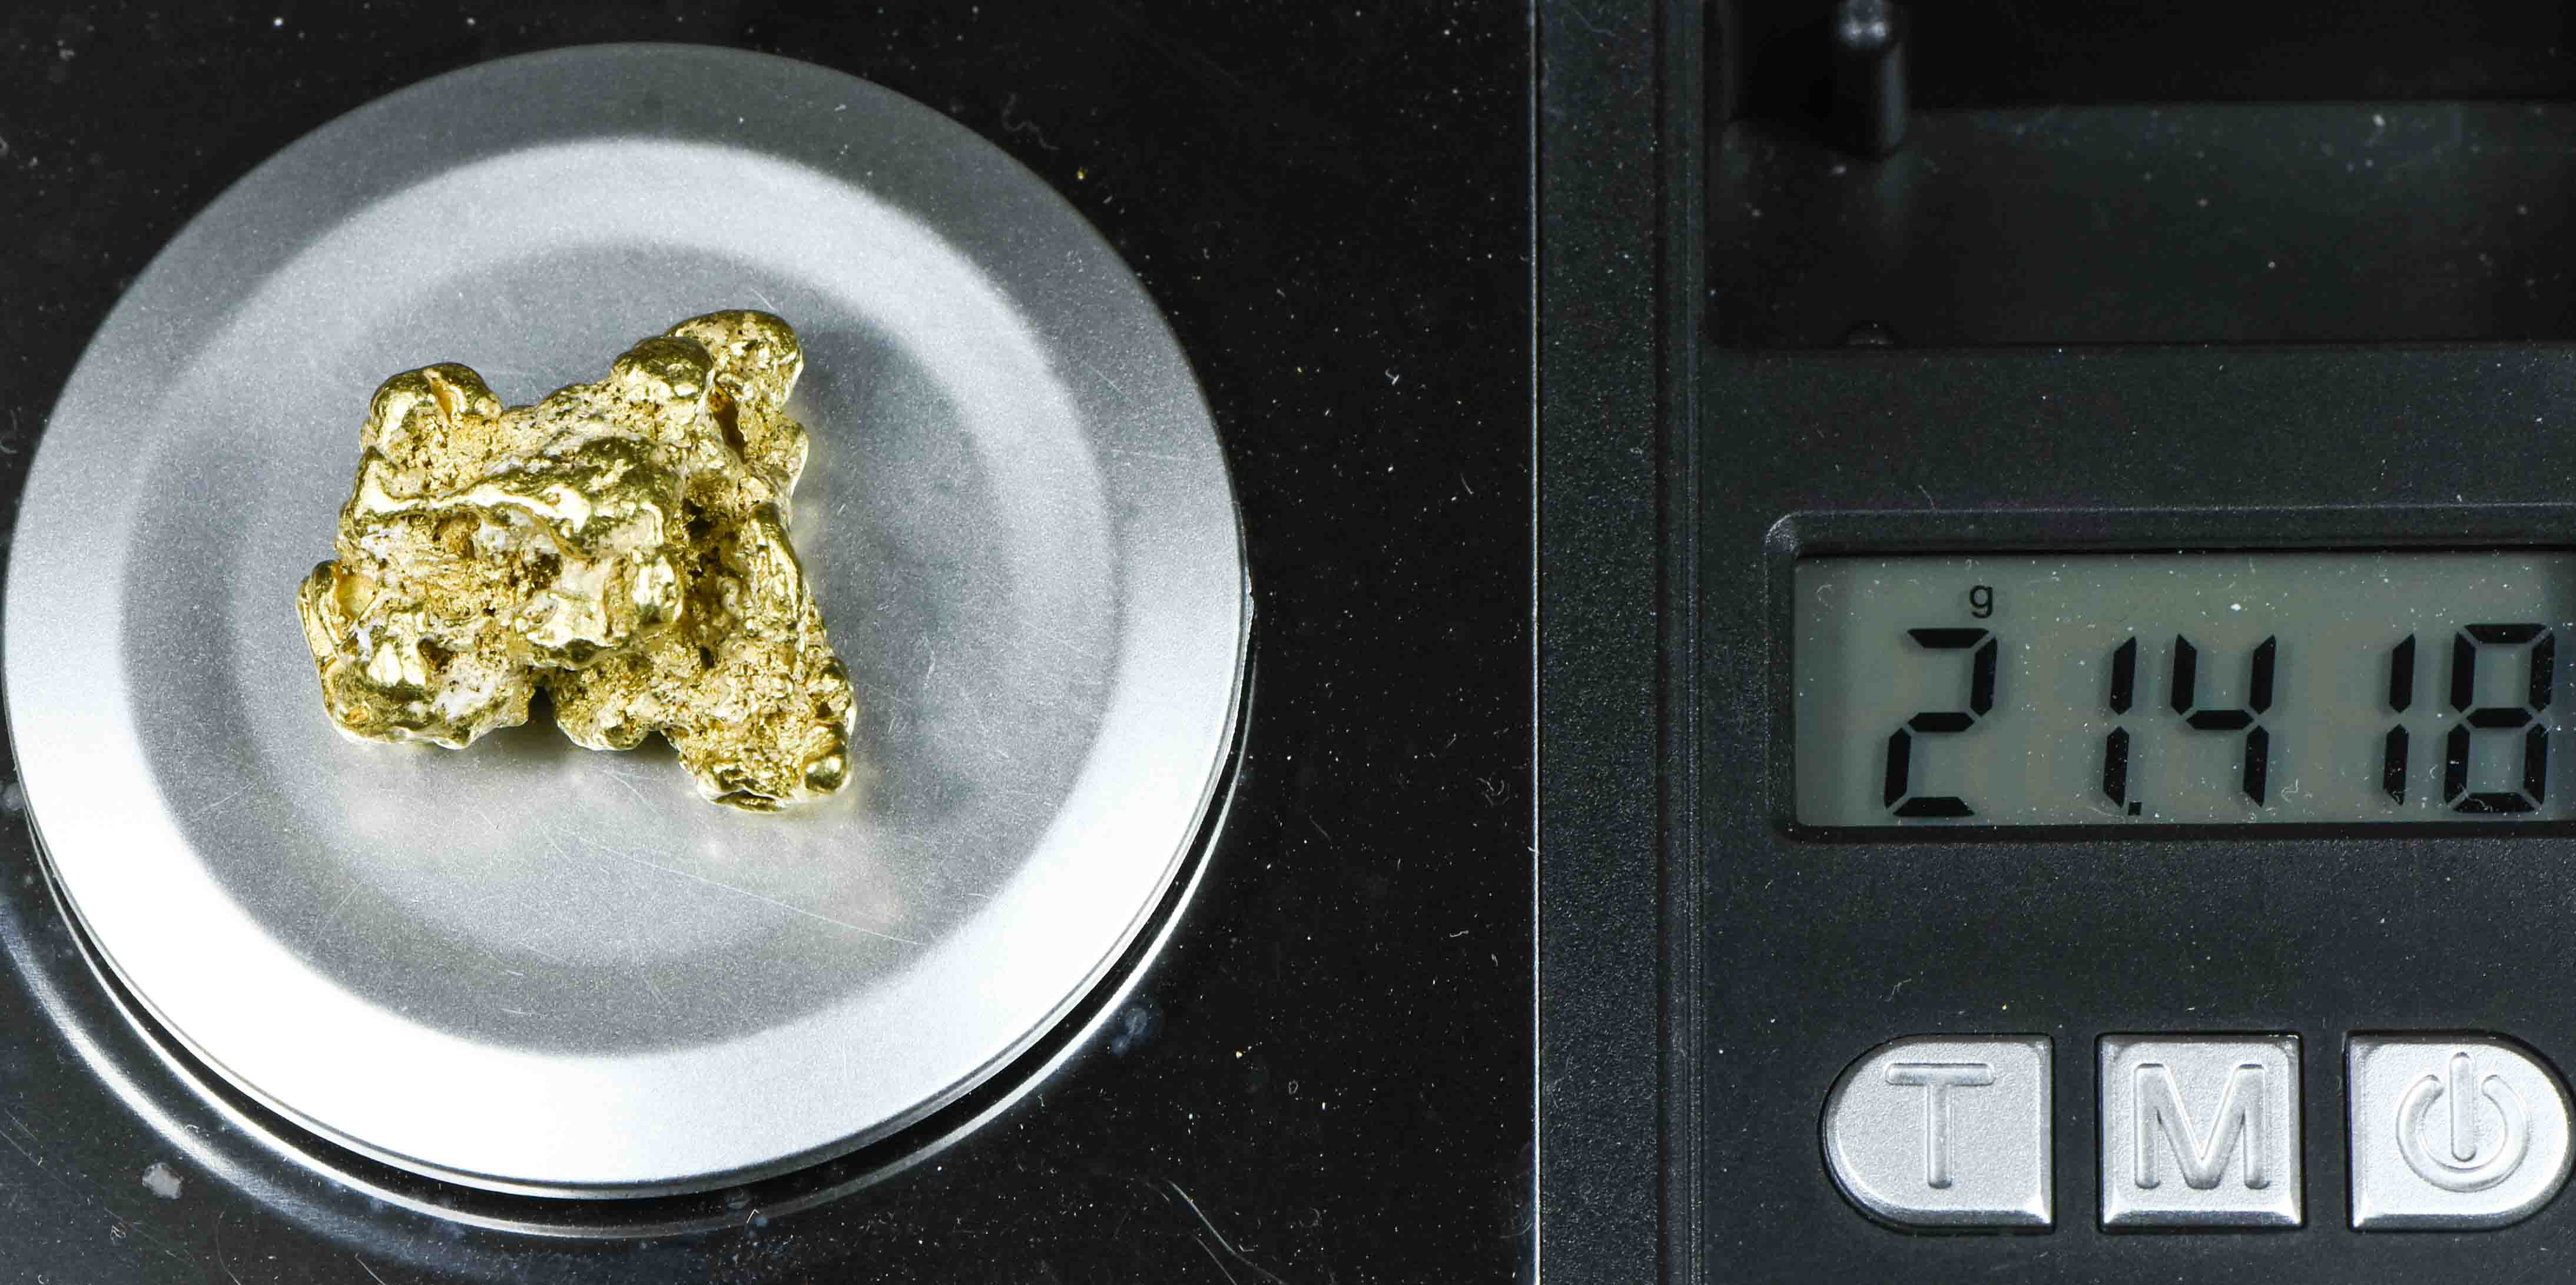 #541 Large Alaskan BC Gold Nugget 21.41 Grams Genuine